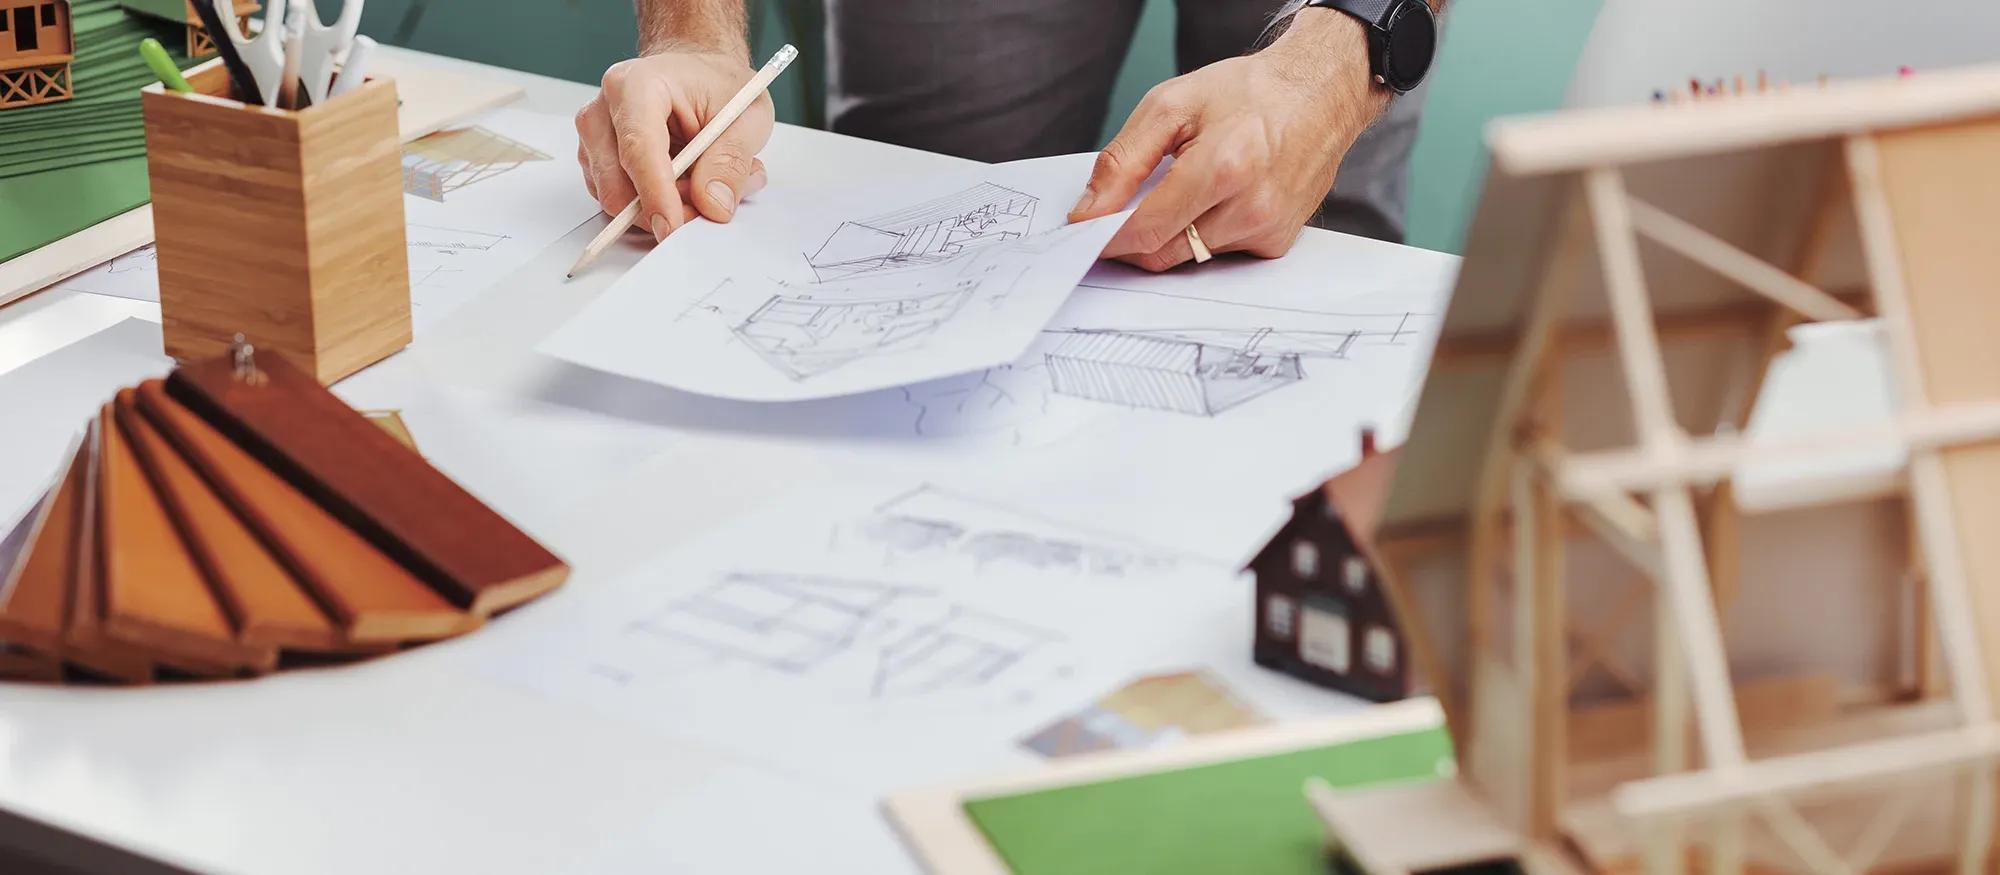 Arkitekt arbetar med bygglovsritning och med husmodeller